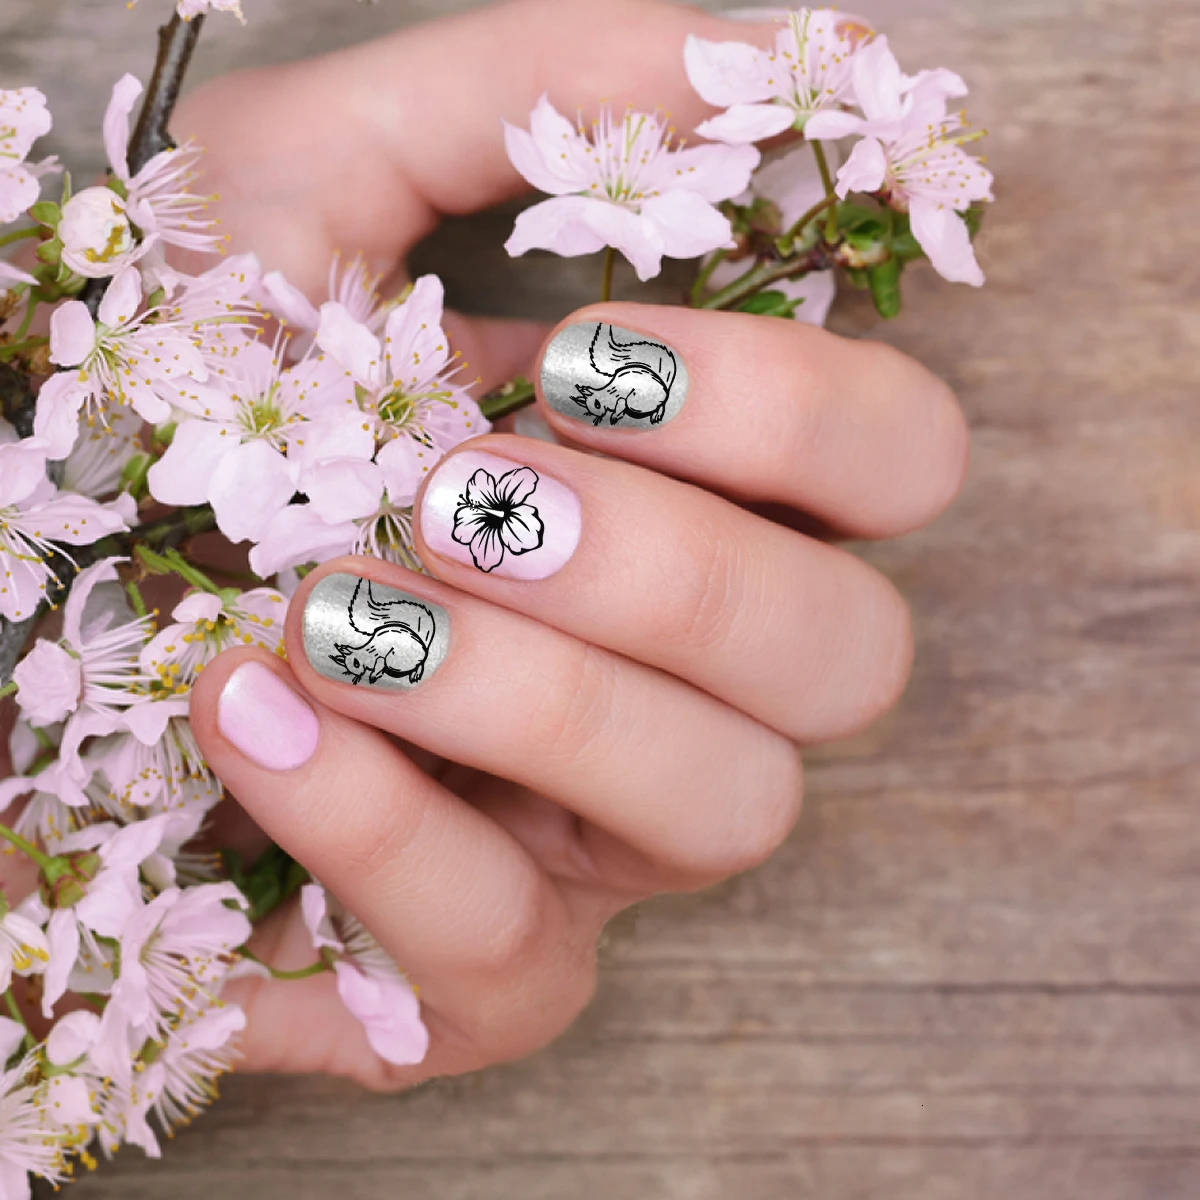 BEAUTYBIGBANG Горячая животный цветочный узор для ногтей штамповка пластины Леопардовый шаблон для ногтей штамп для дизайна ногтей штамп шаблон изображения